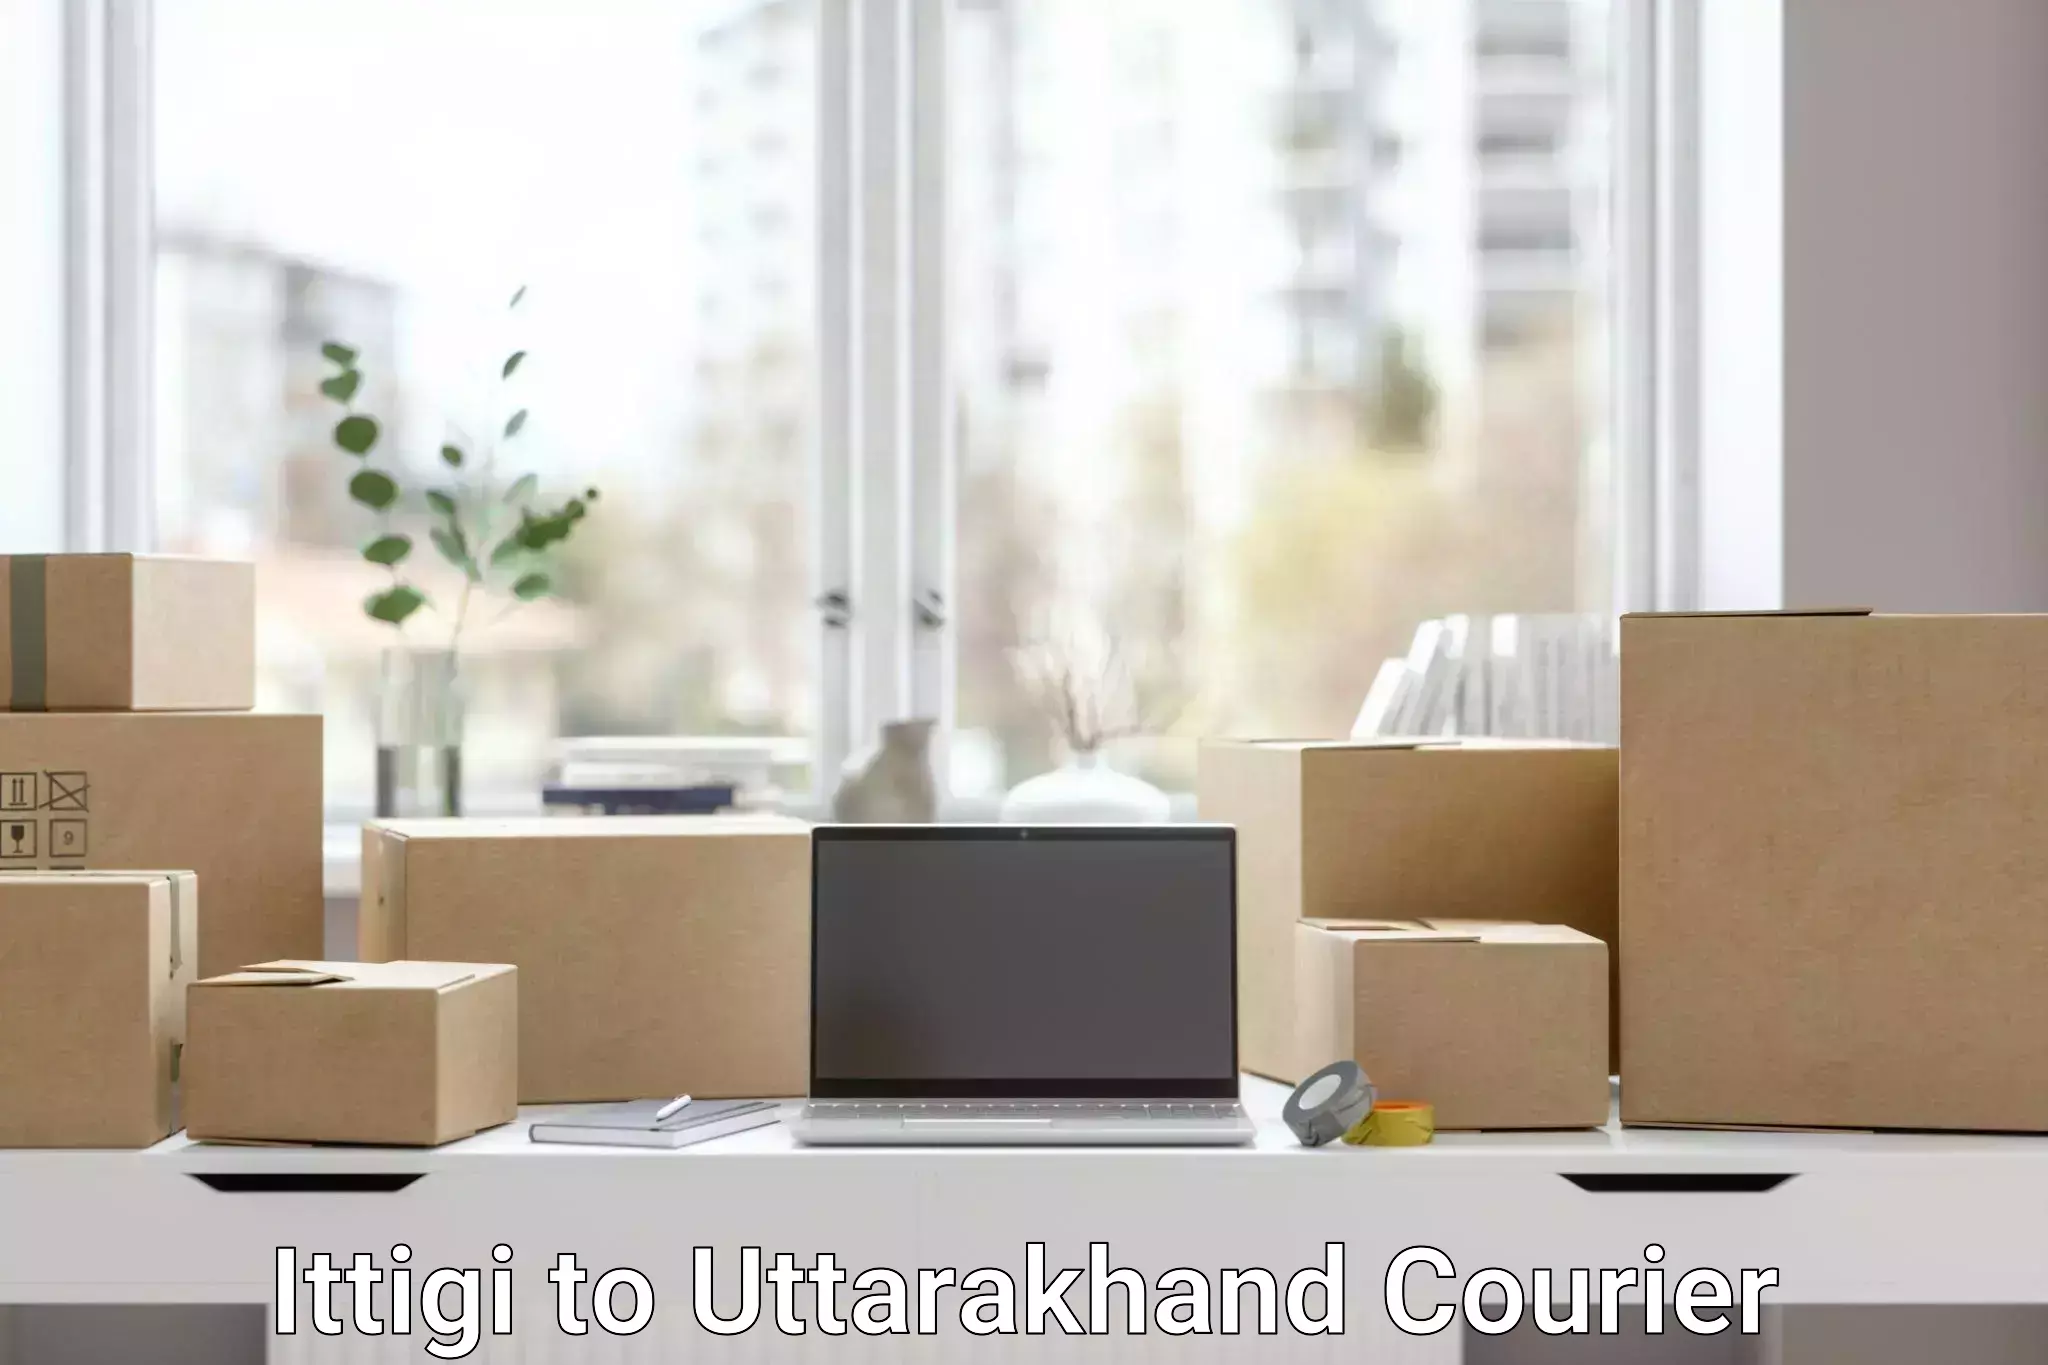 Reliable logistics providers Ittigi to Uttarakhand